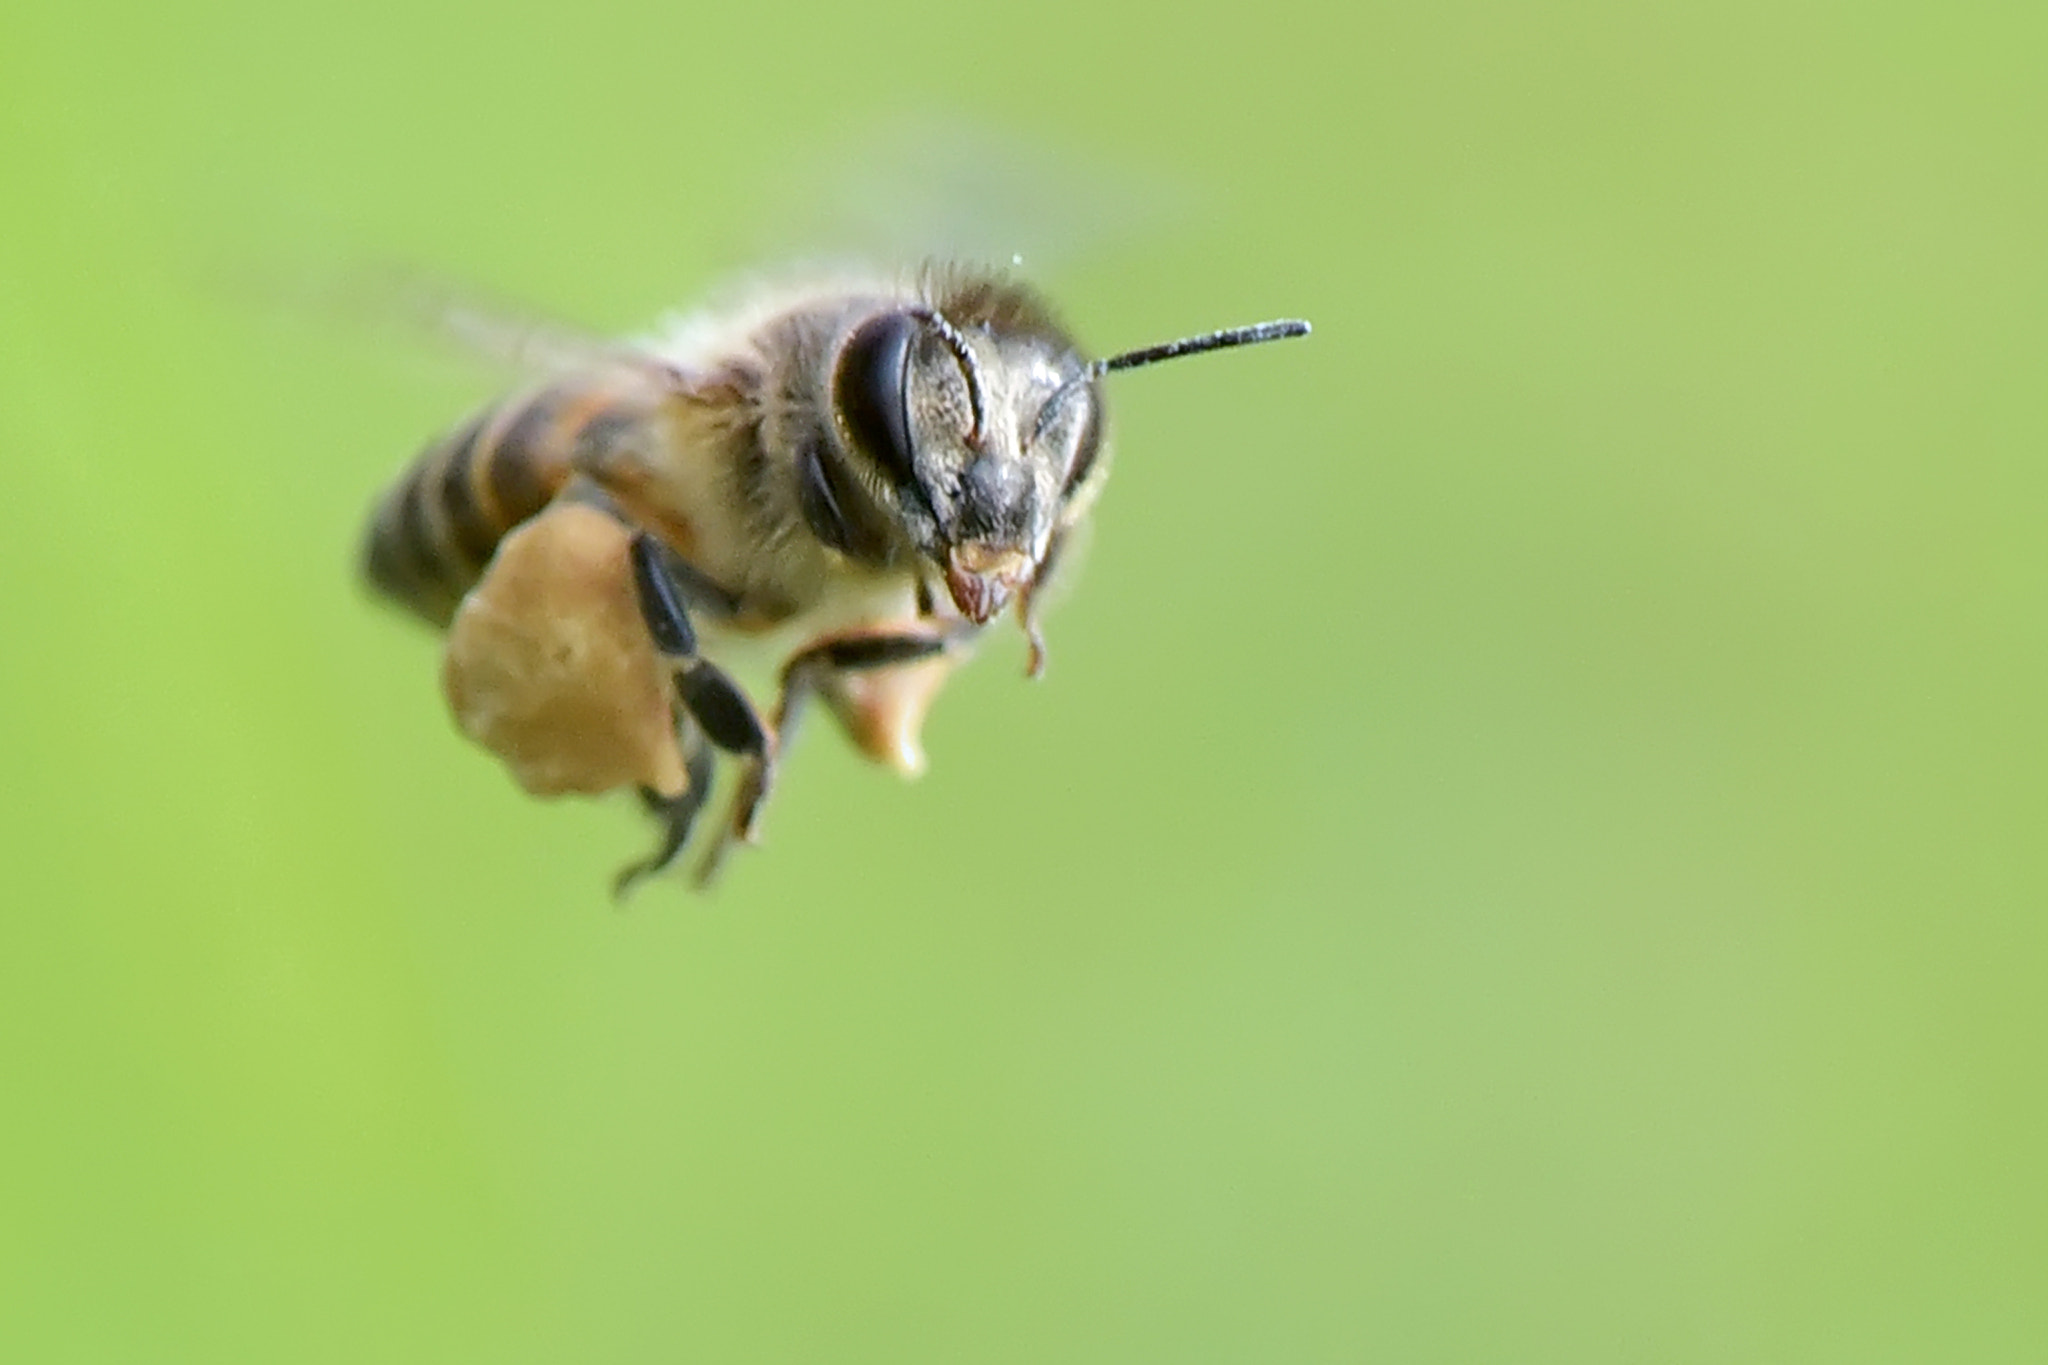 AF Zoom-Nikkor 35-105mm f/3.5-4.5 sample photo. Honey bee photography